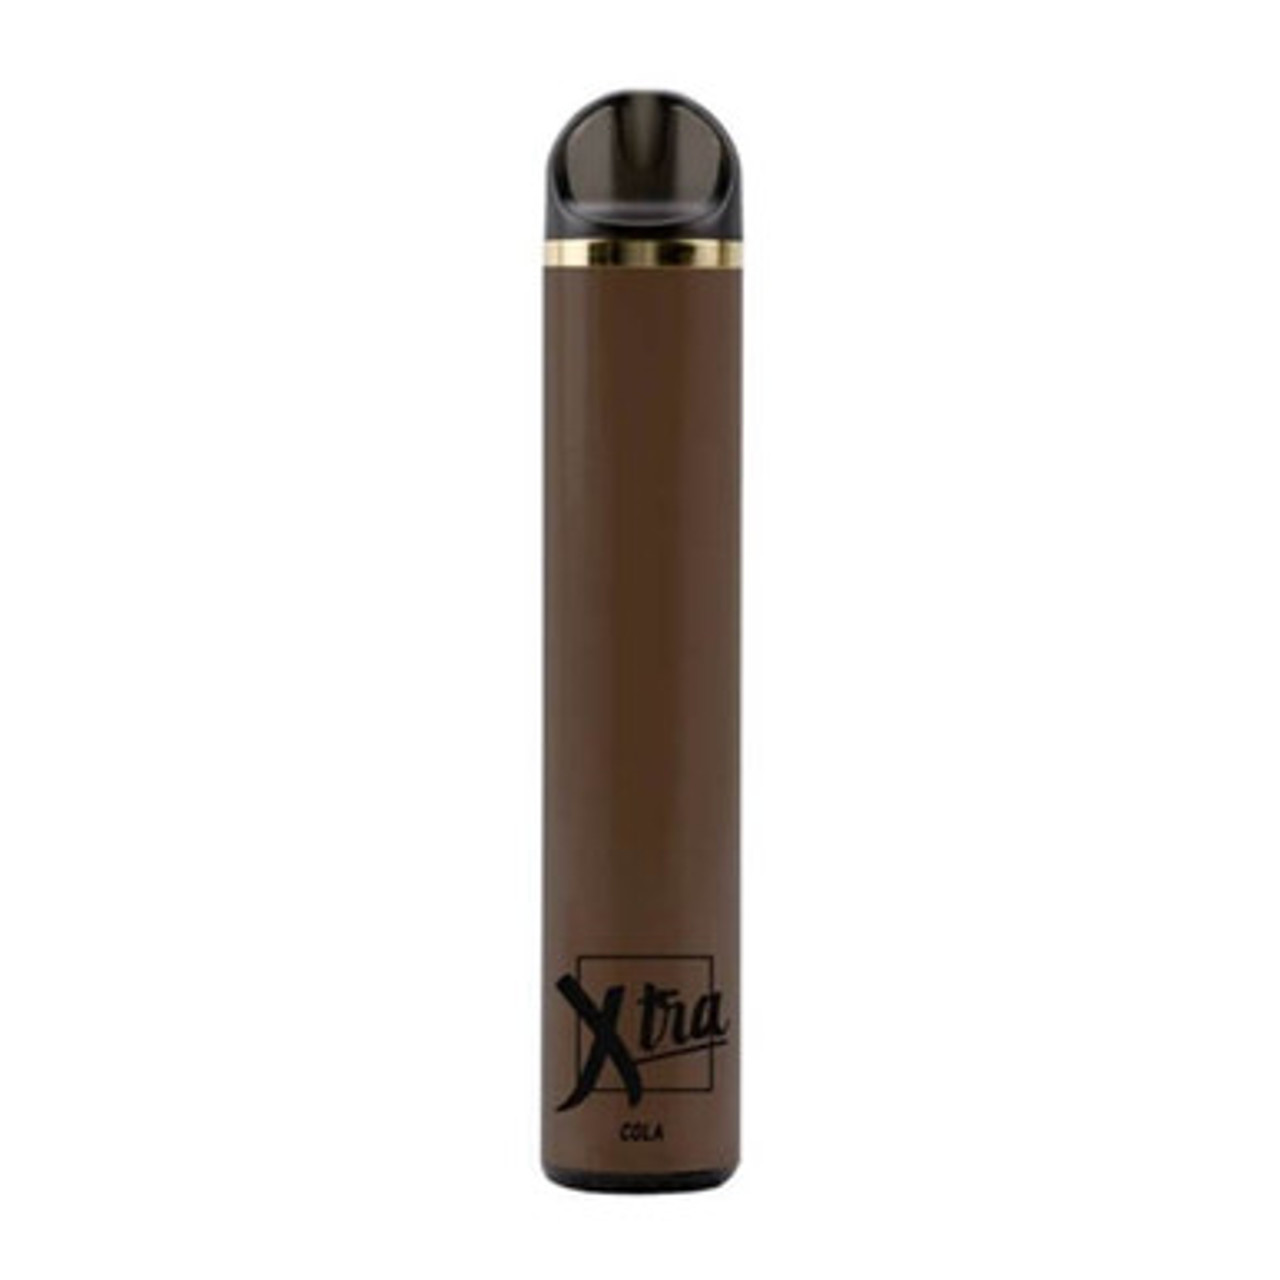 Xtra Disposable Vape Pens · +1500 Puffs – Mi-One Brands